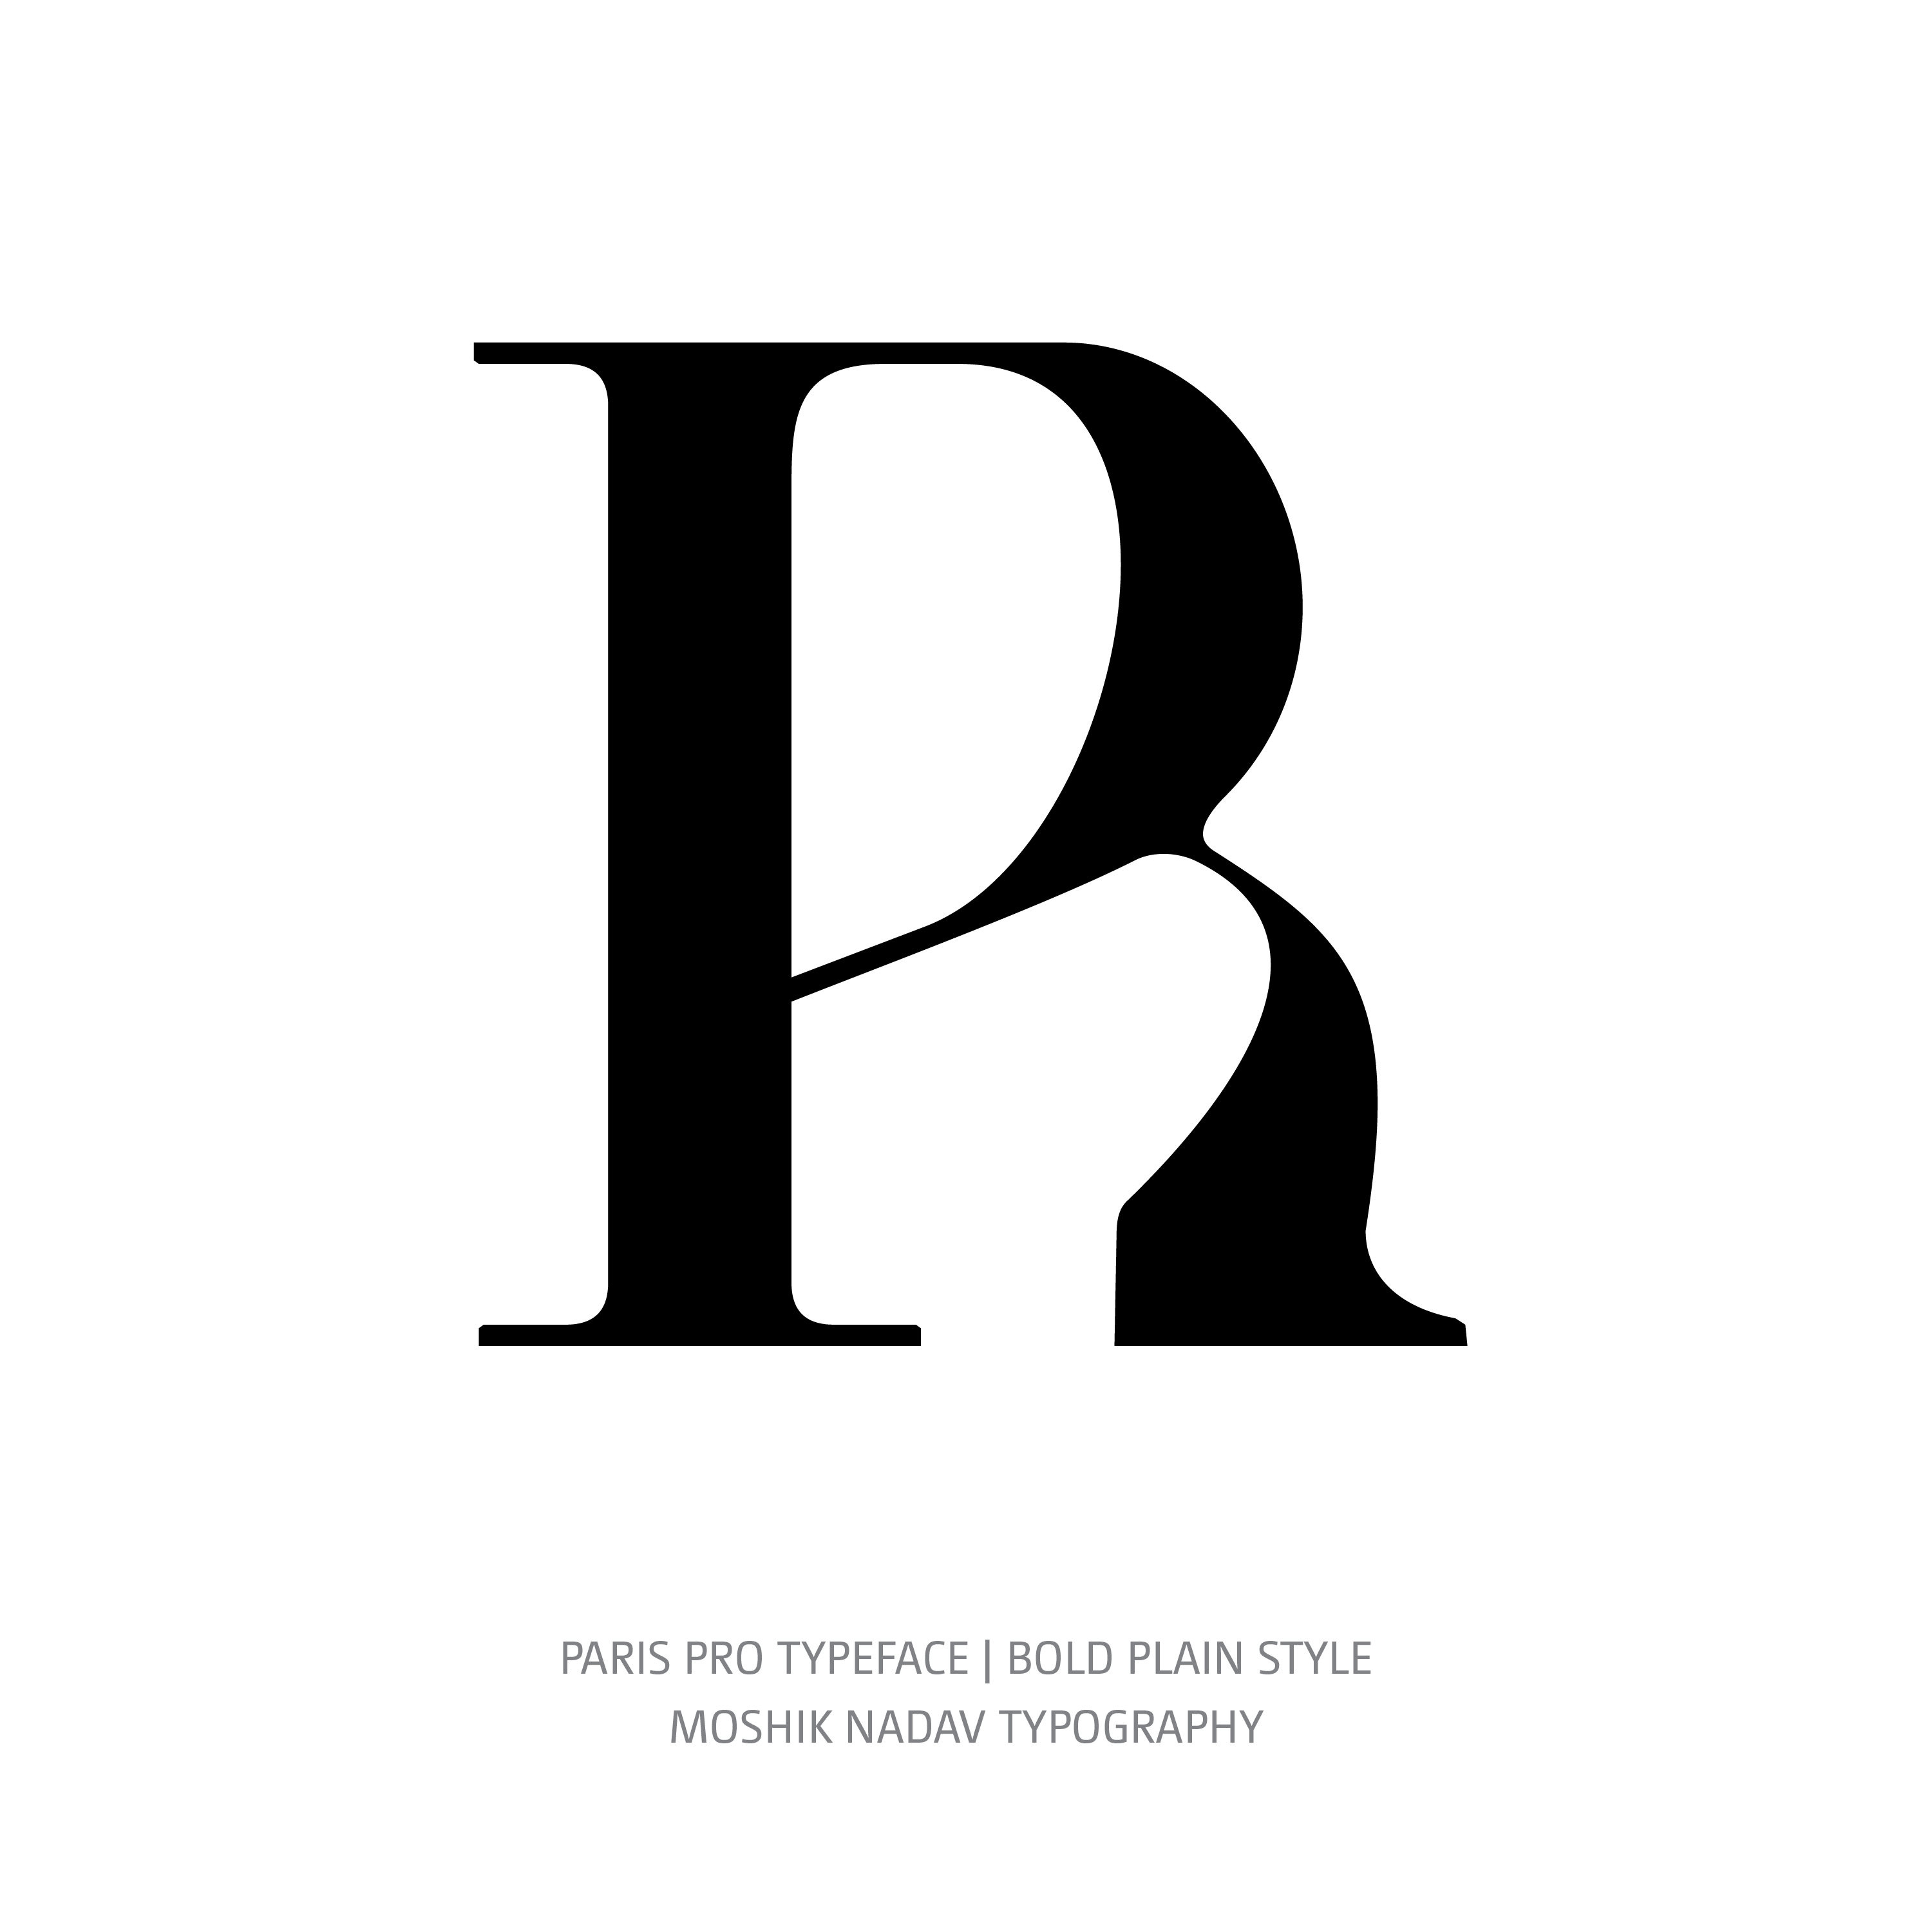 Paris Pro Typeface Bold Plain R